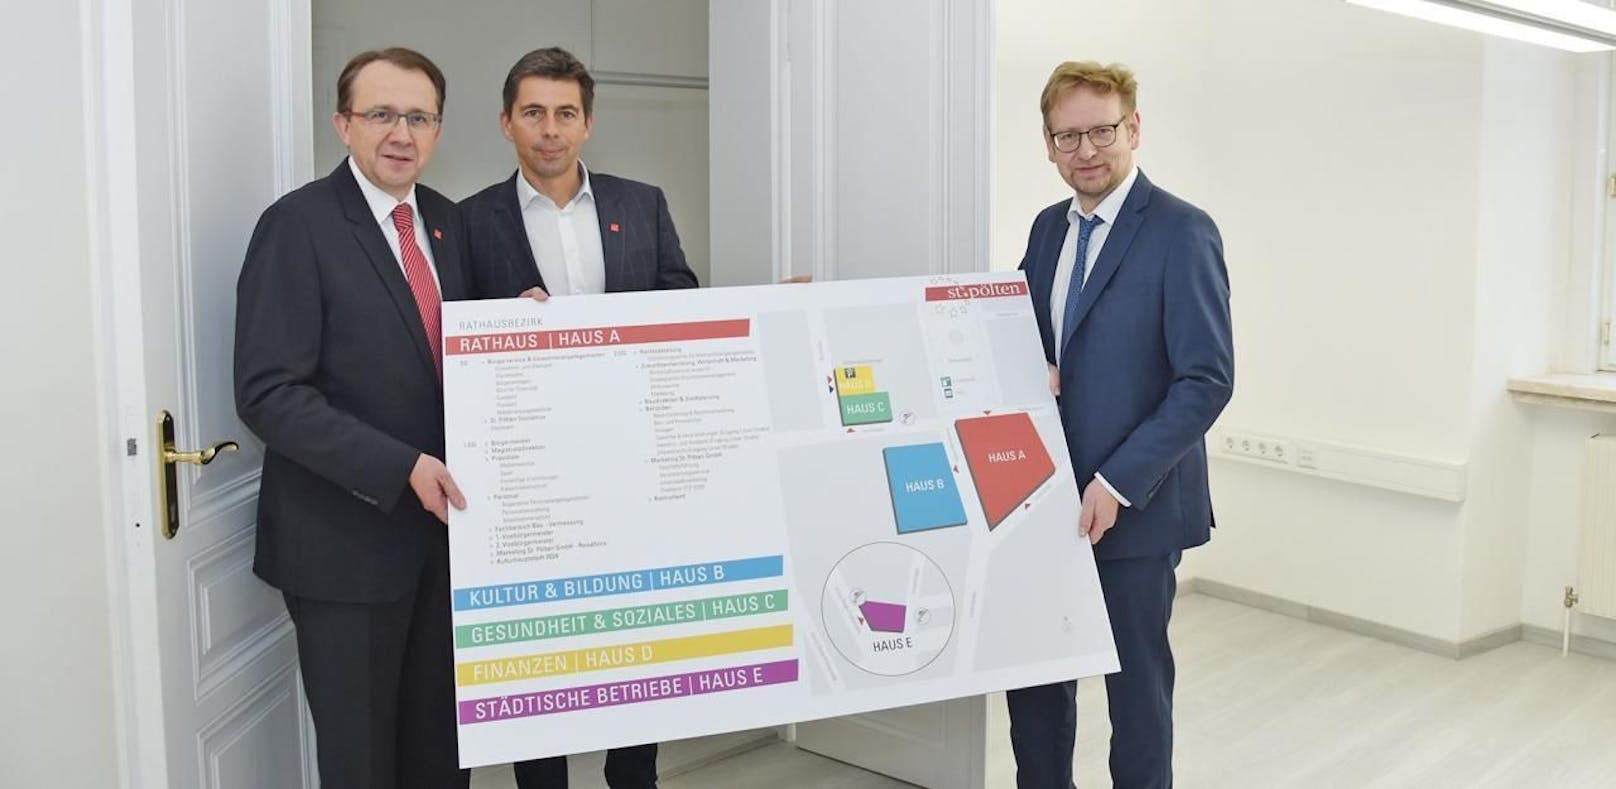 Bürgermeister Stadler, Marketingchef Christoph Schwarz und Magistratsdirektor Thomas Dewina präsentieren den neuen Rathausbezirk.